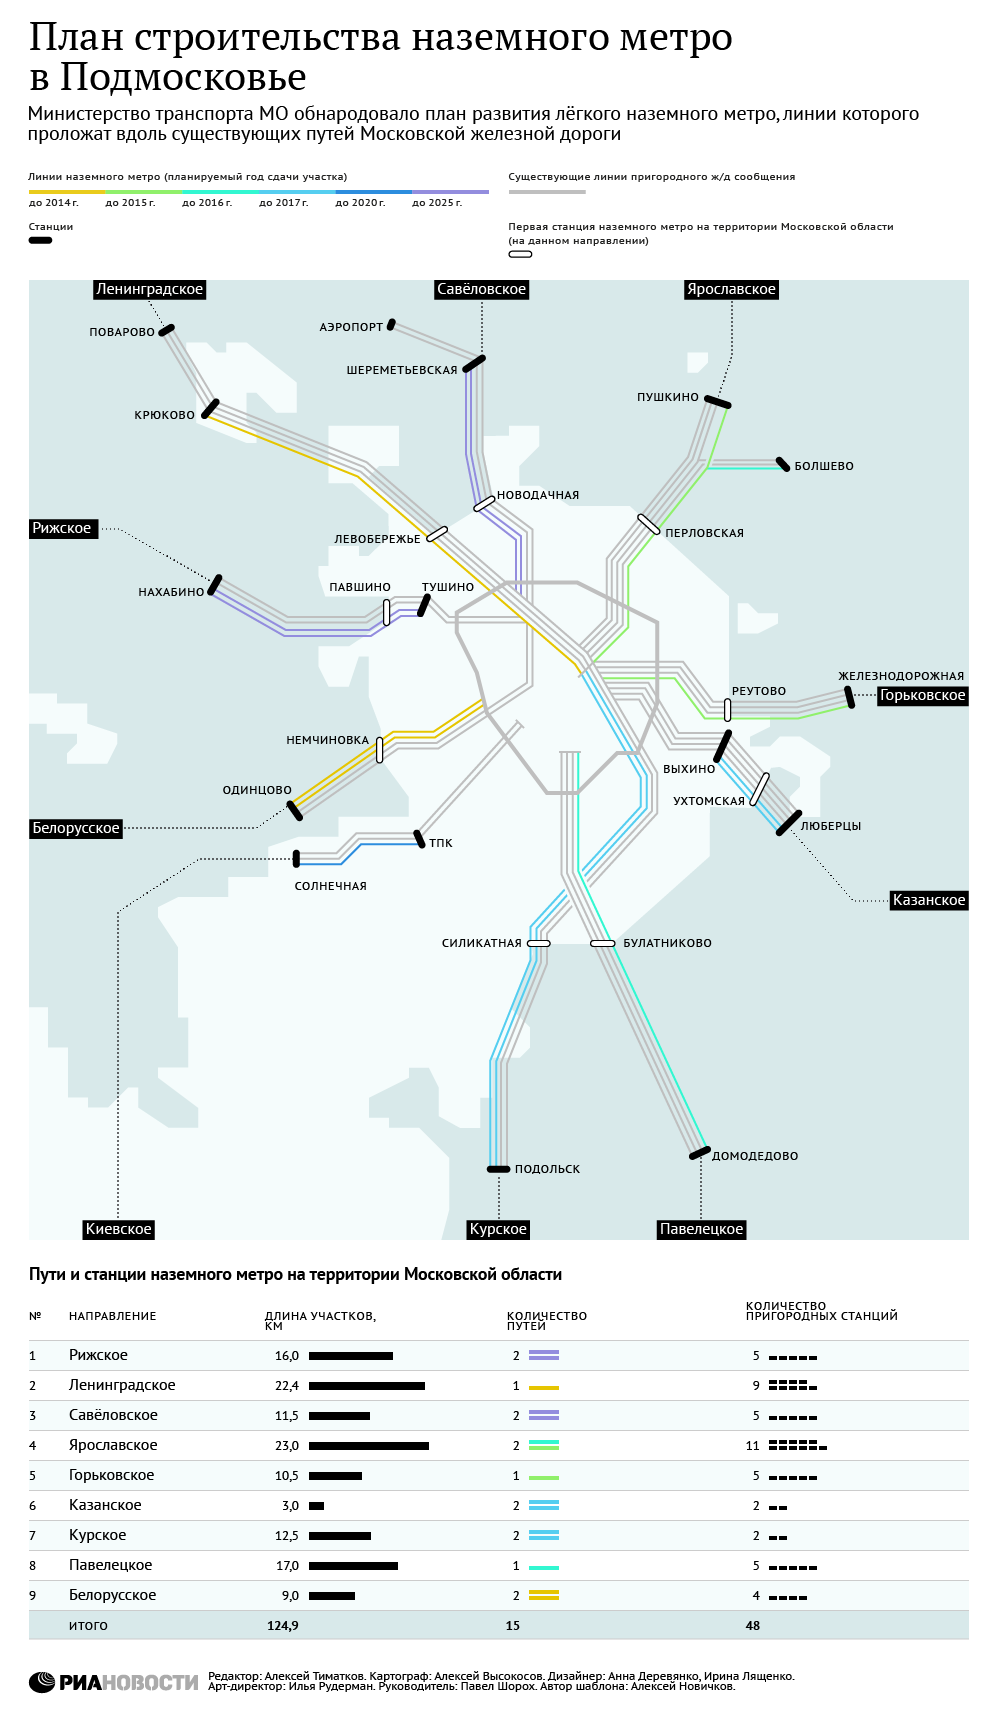 Новая схема метро Москвы до 2030 года: что поменялось и кто в пролете?